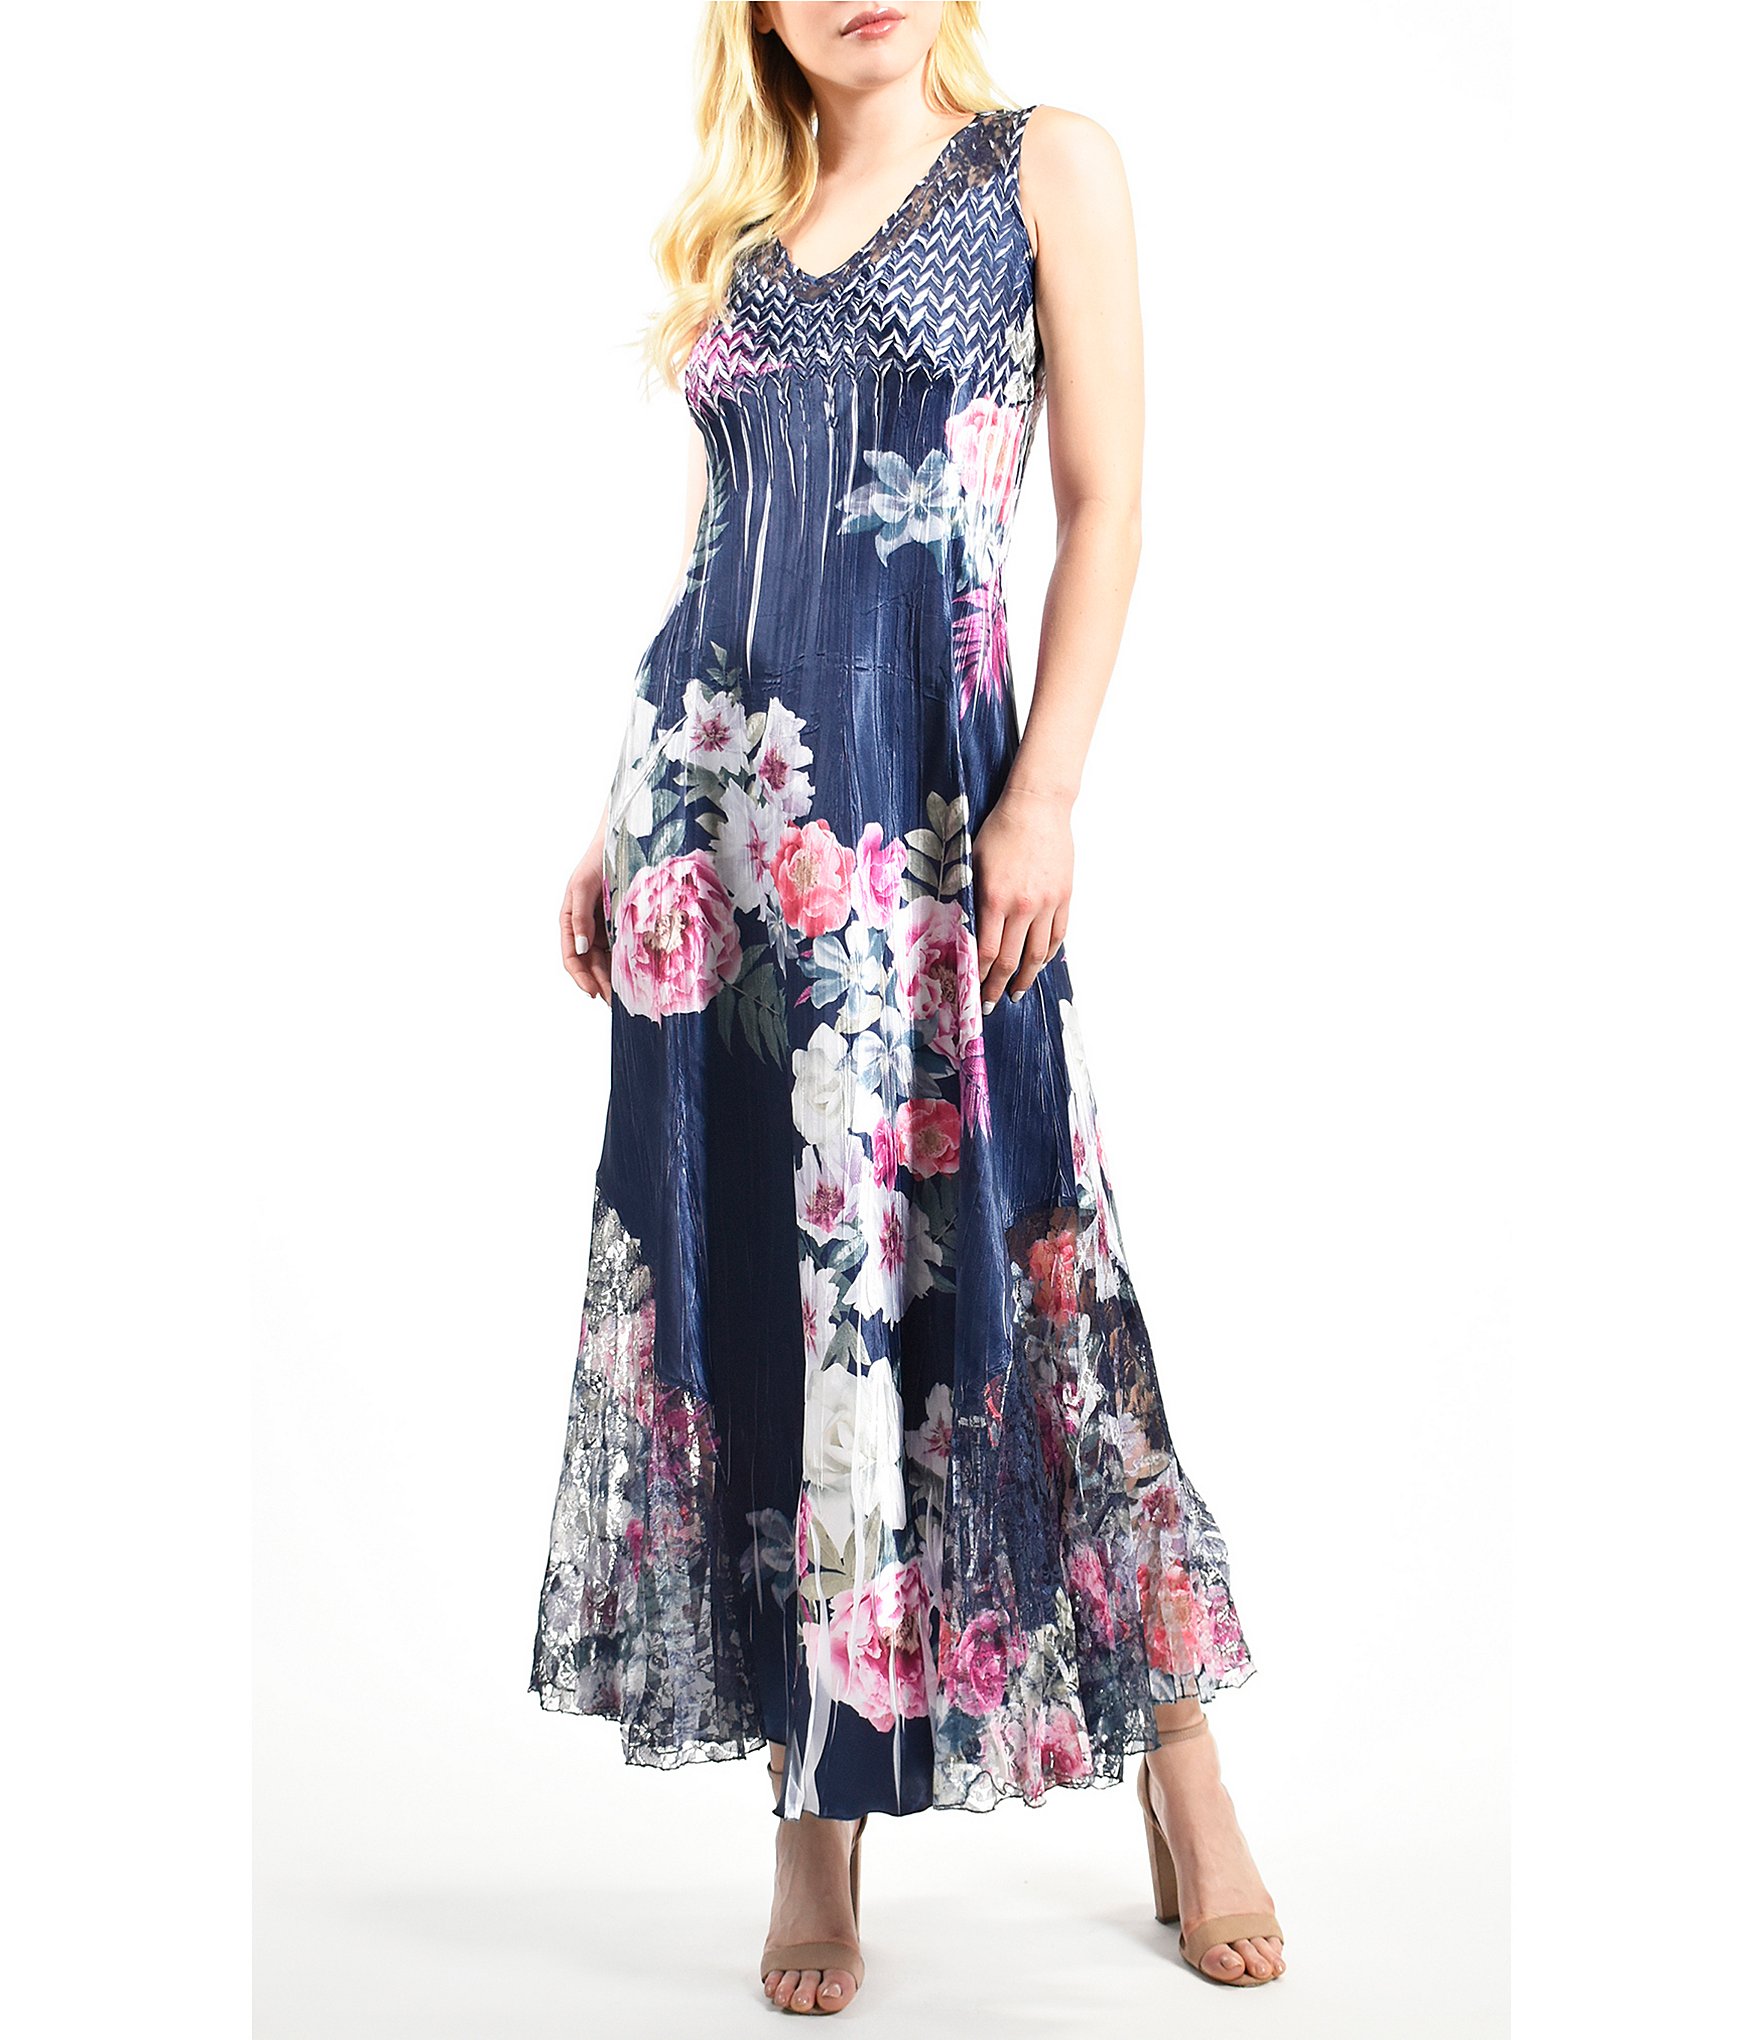 Komarov Floral Print Pleated Lace-Up Back Dress | Dillard's